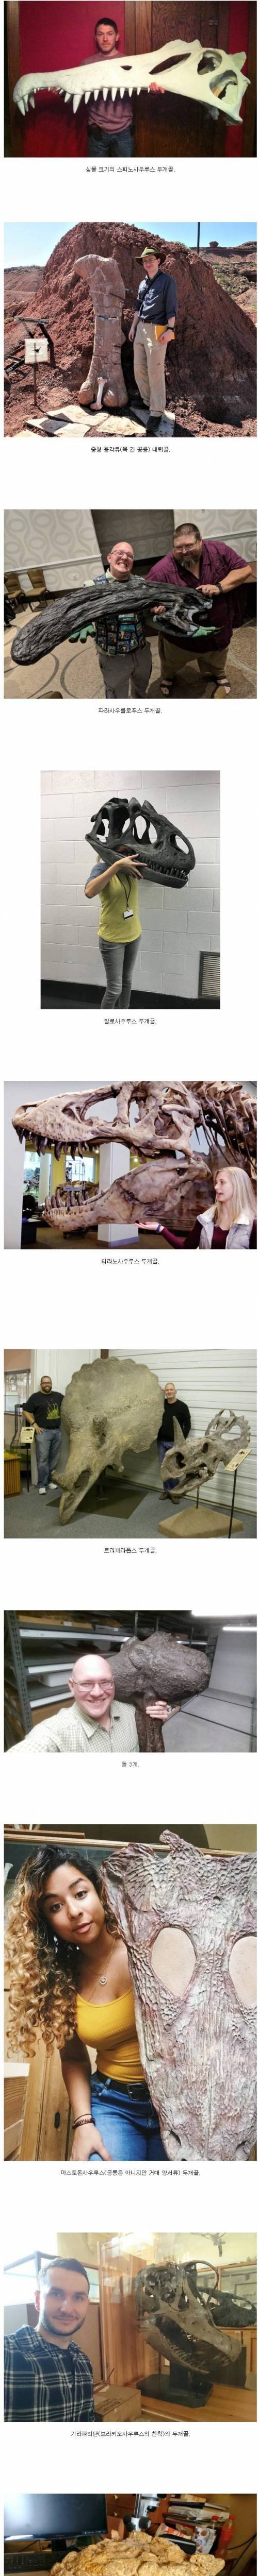 [스압] 공룡 화석 크기 체감.jpg